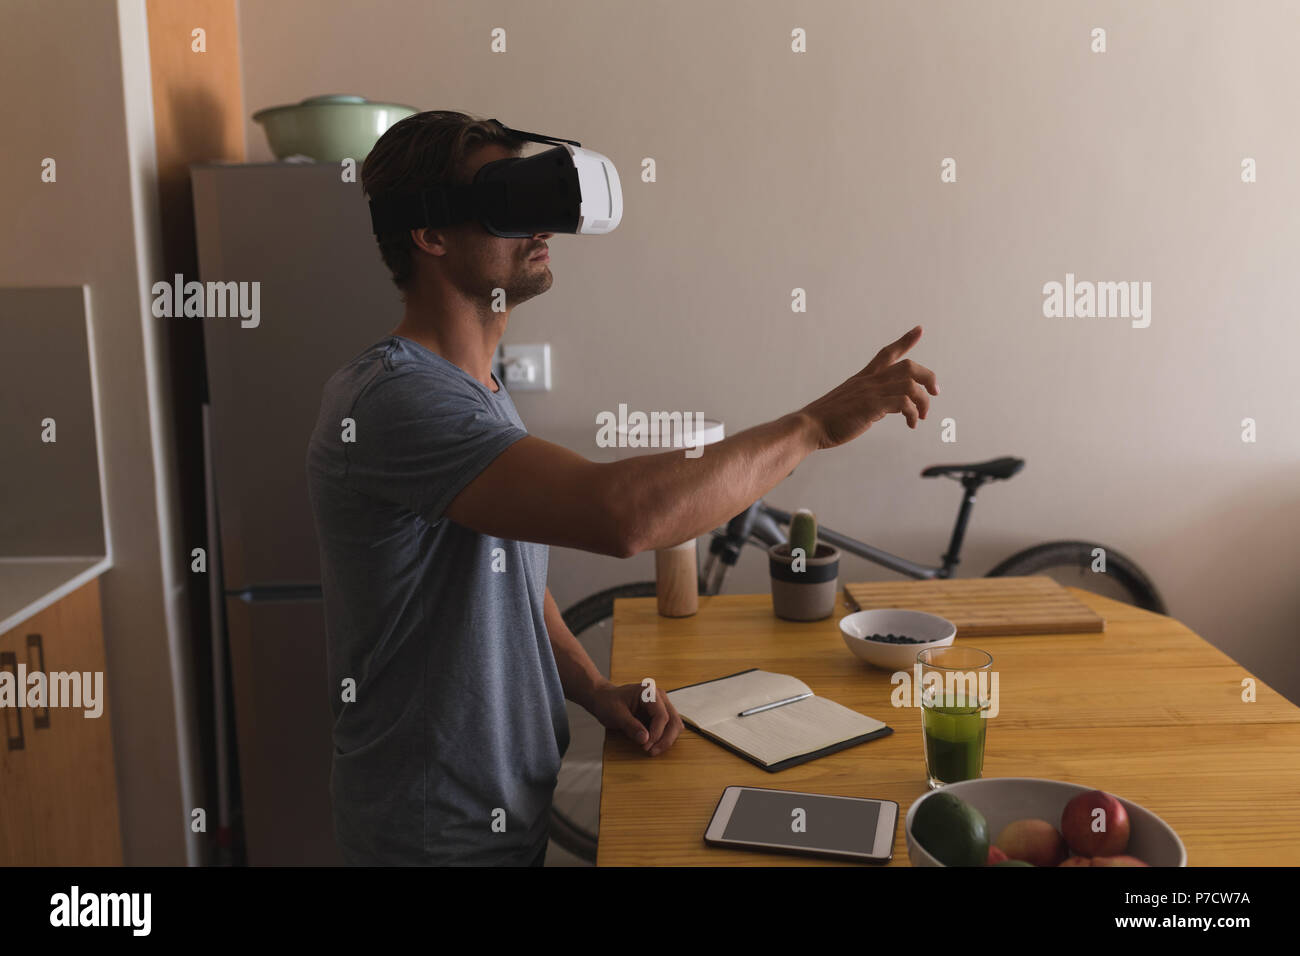 L'homme à l'aide de casque de réalité virtuelle Banque D'Images